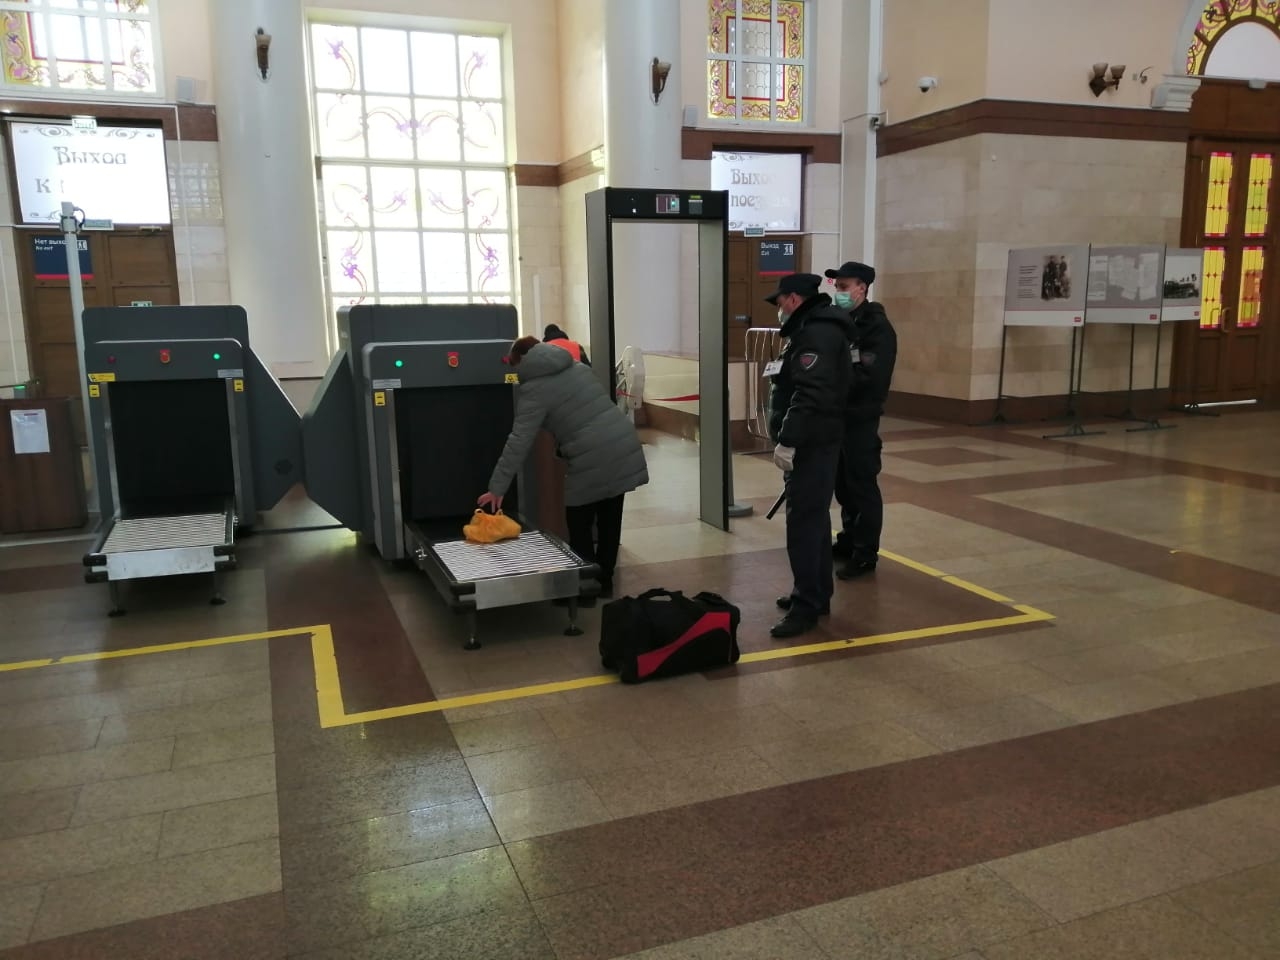 На вокзале Брянск-Орловский появились интроскопы для досмотра багажа